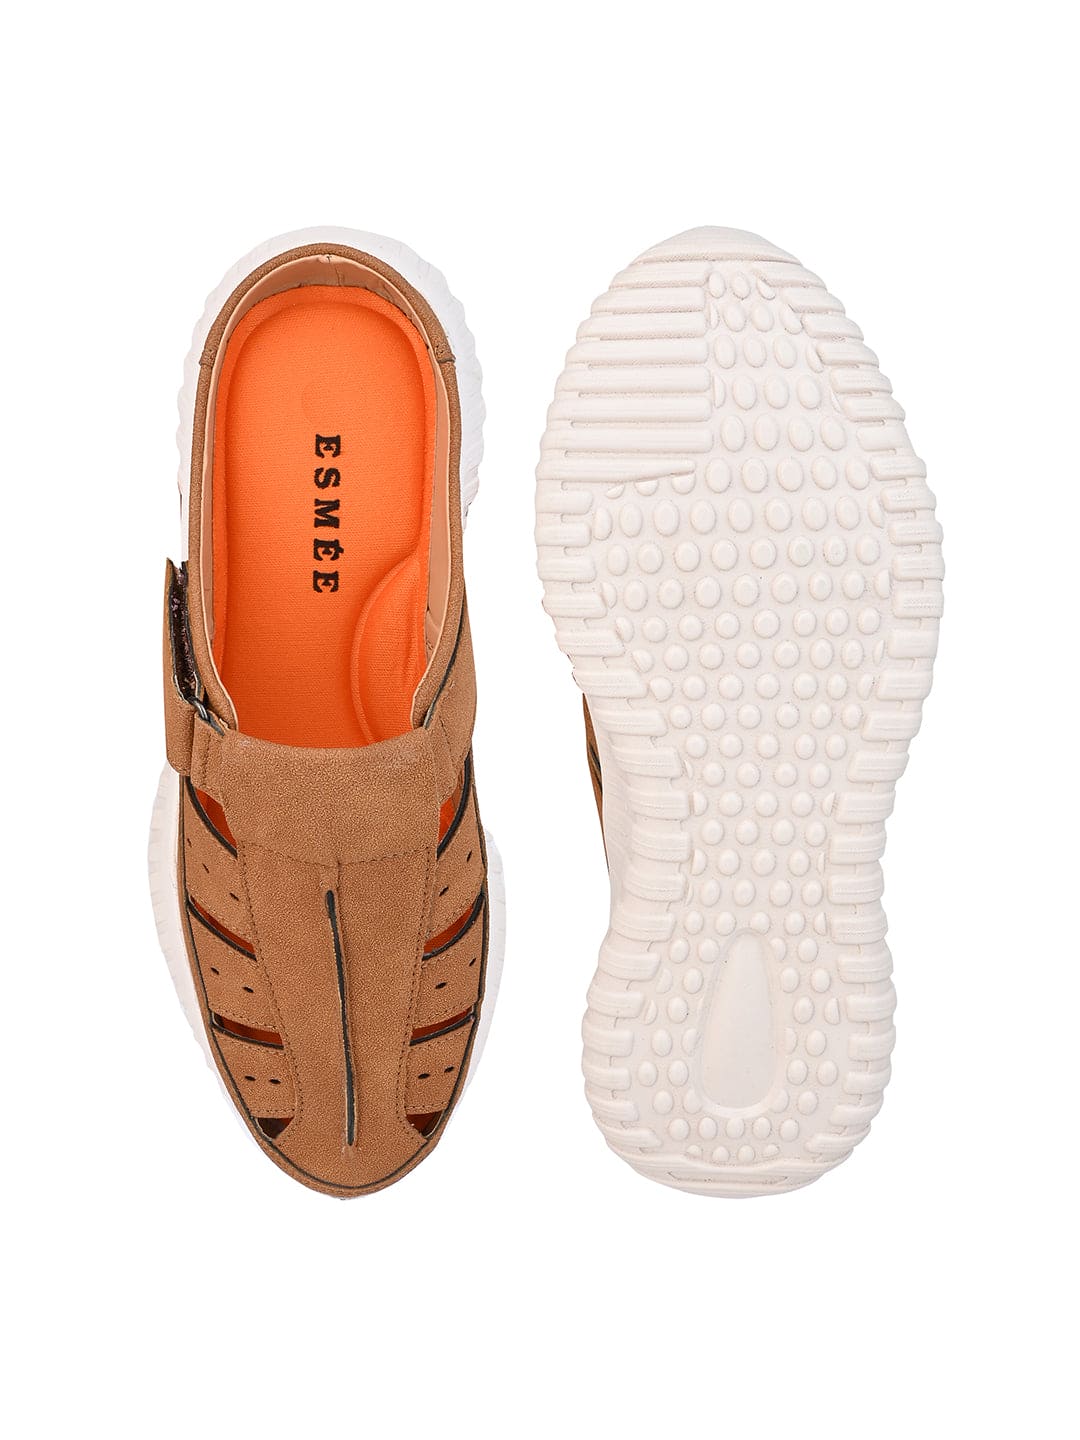 Esmee WalkZee Sandals for Men - Tan